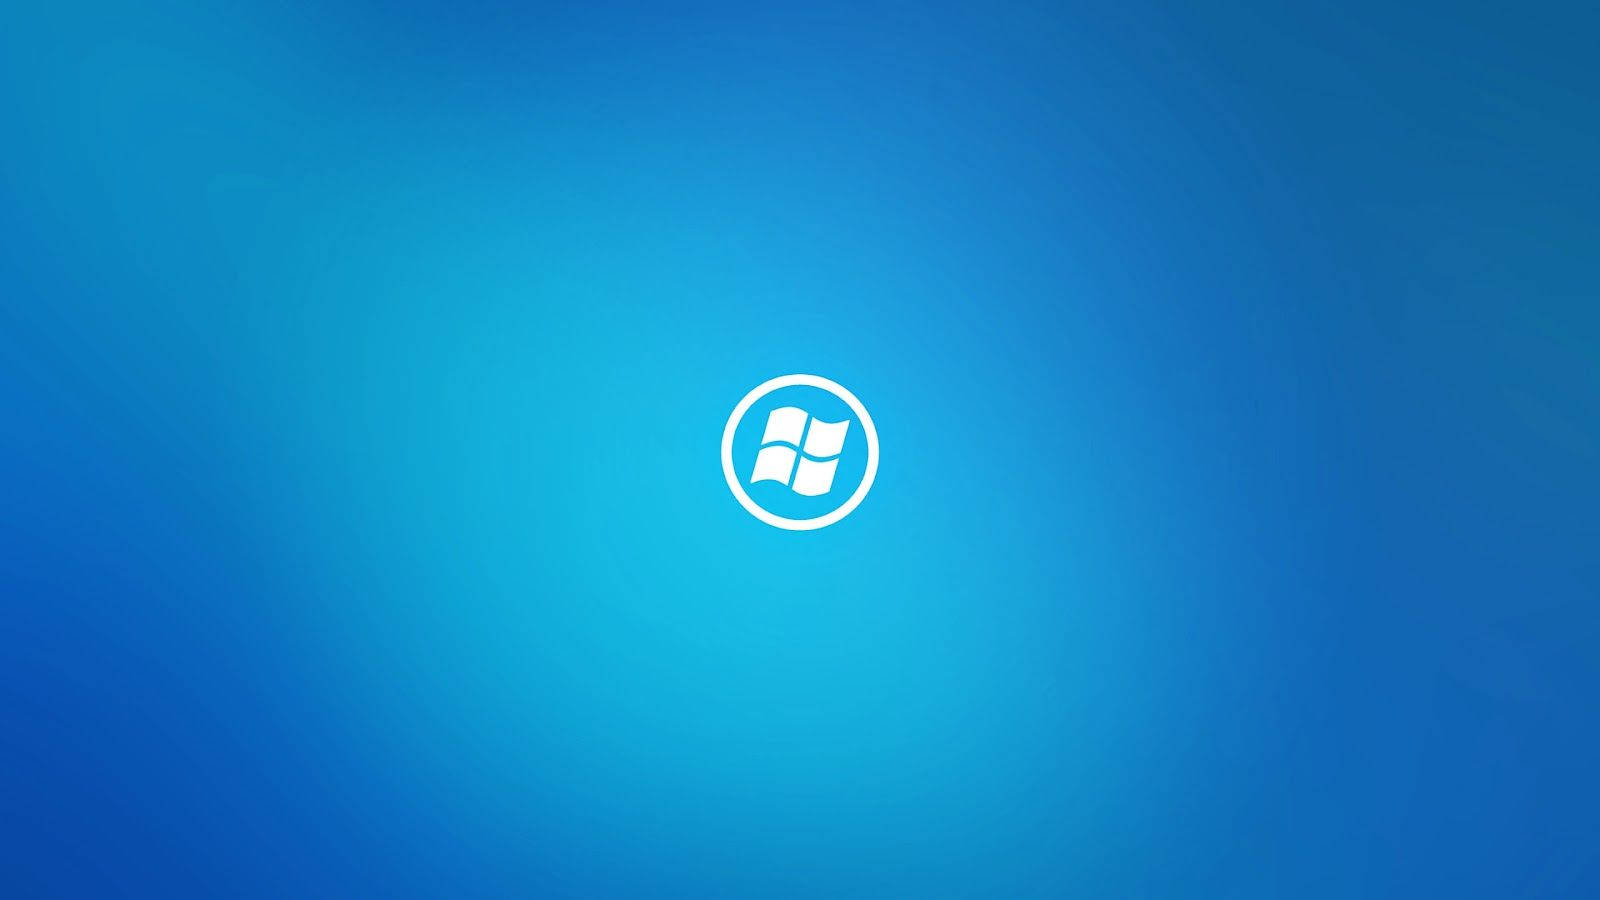 Logotipodo Windows 10 Em Hd Em Formato Circular. Papel de Parede